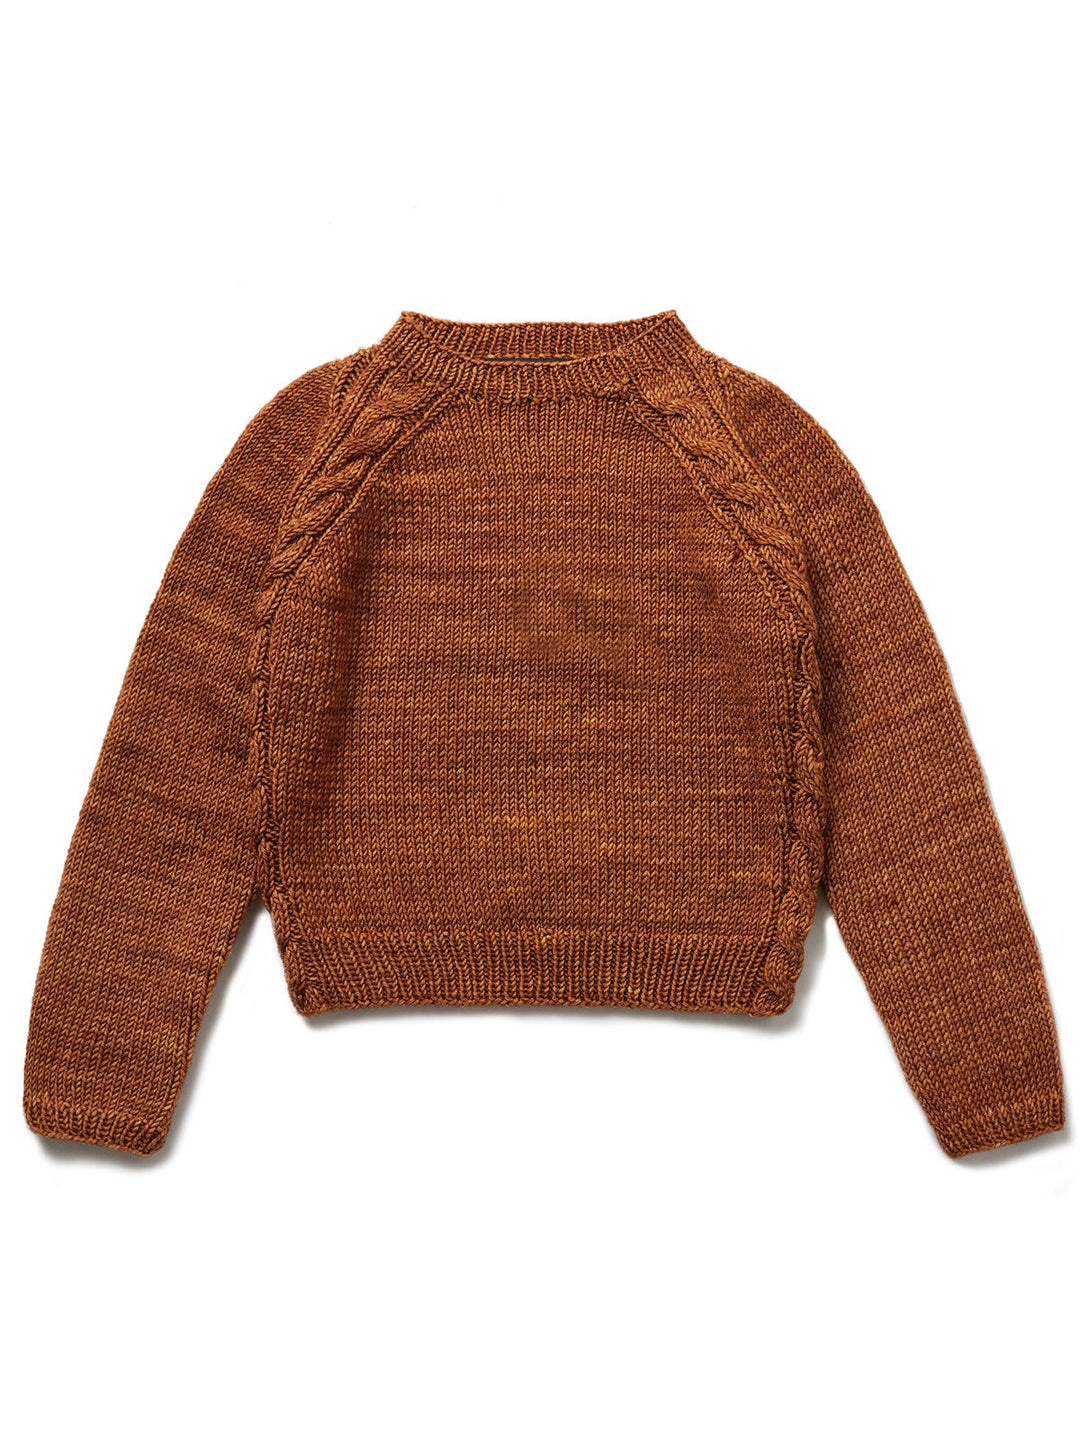 Strickpaket Cool Wool Big Vintage Pullover - Kids